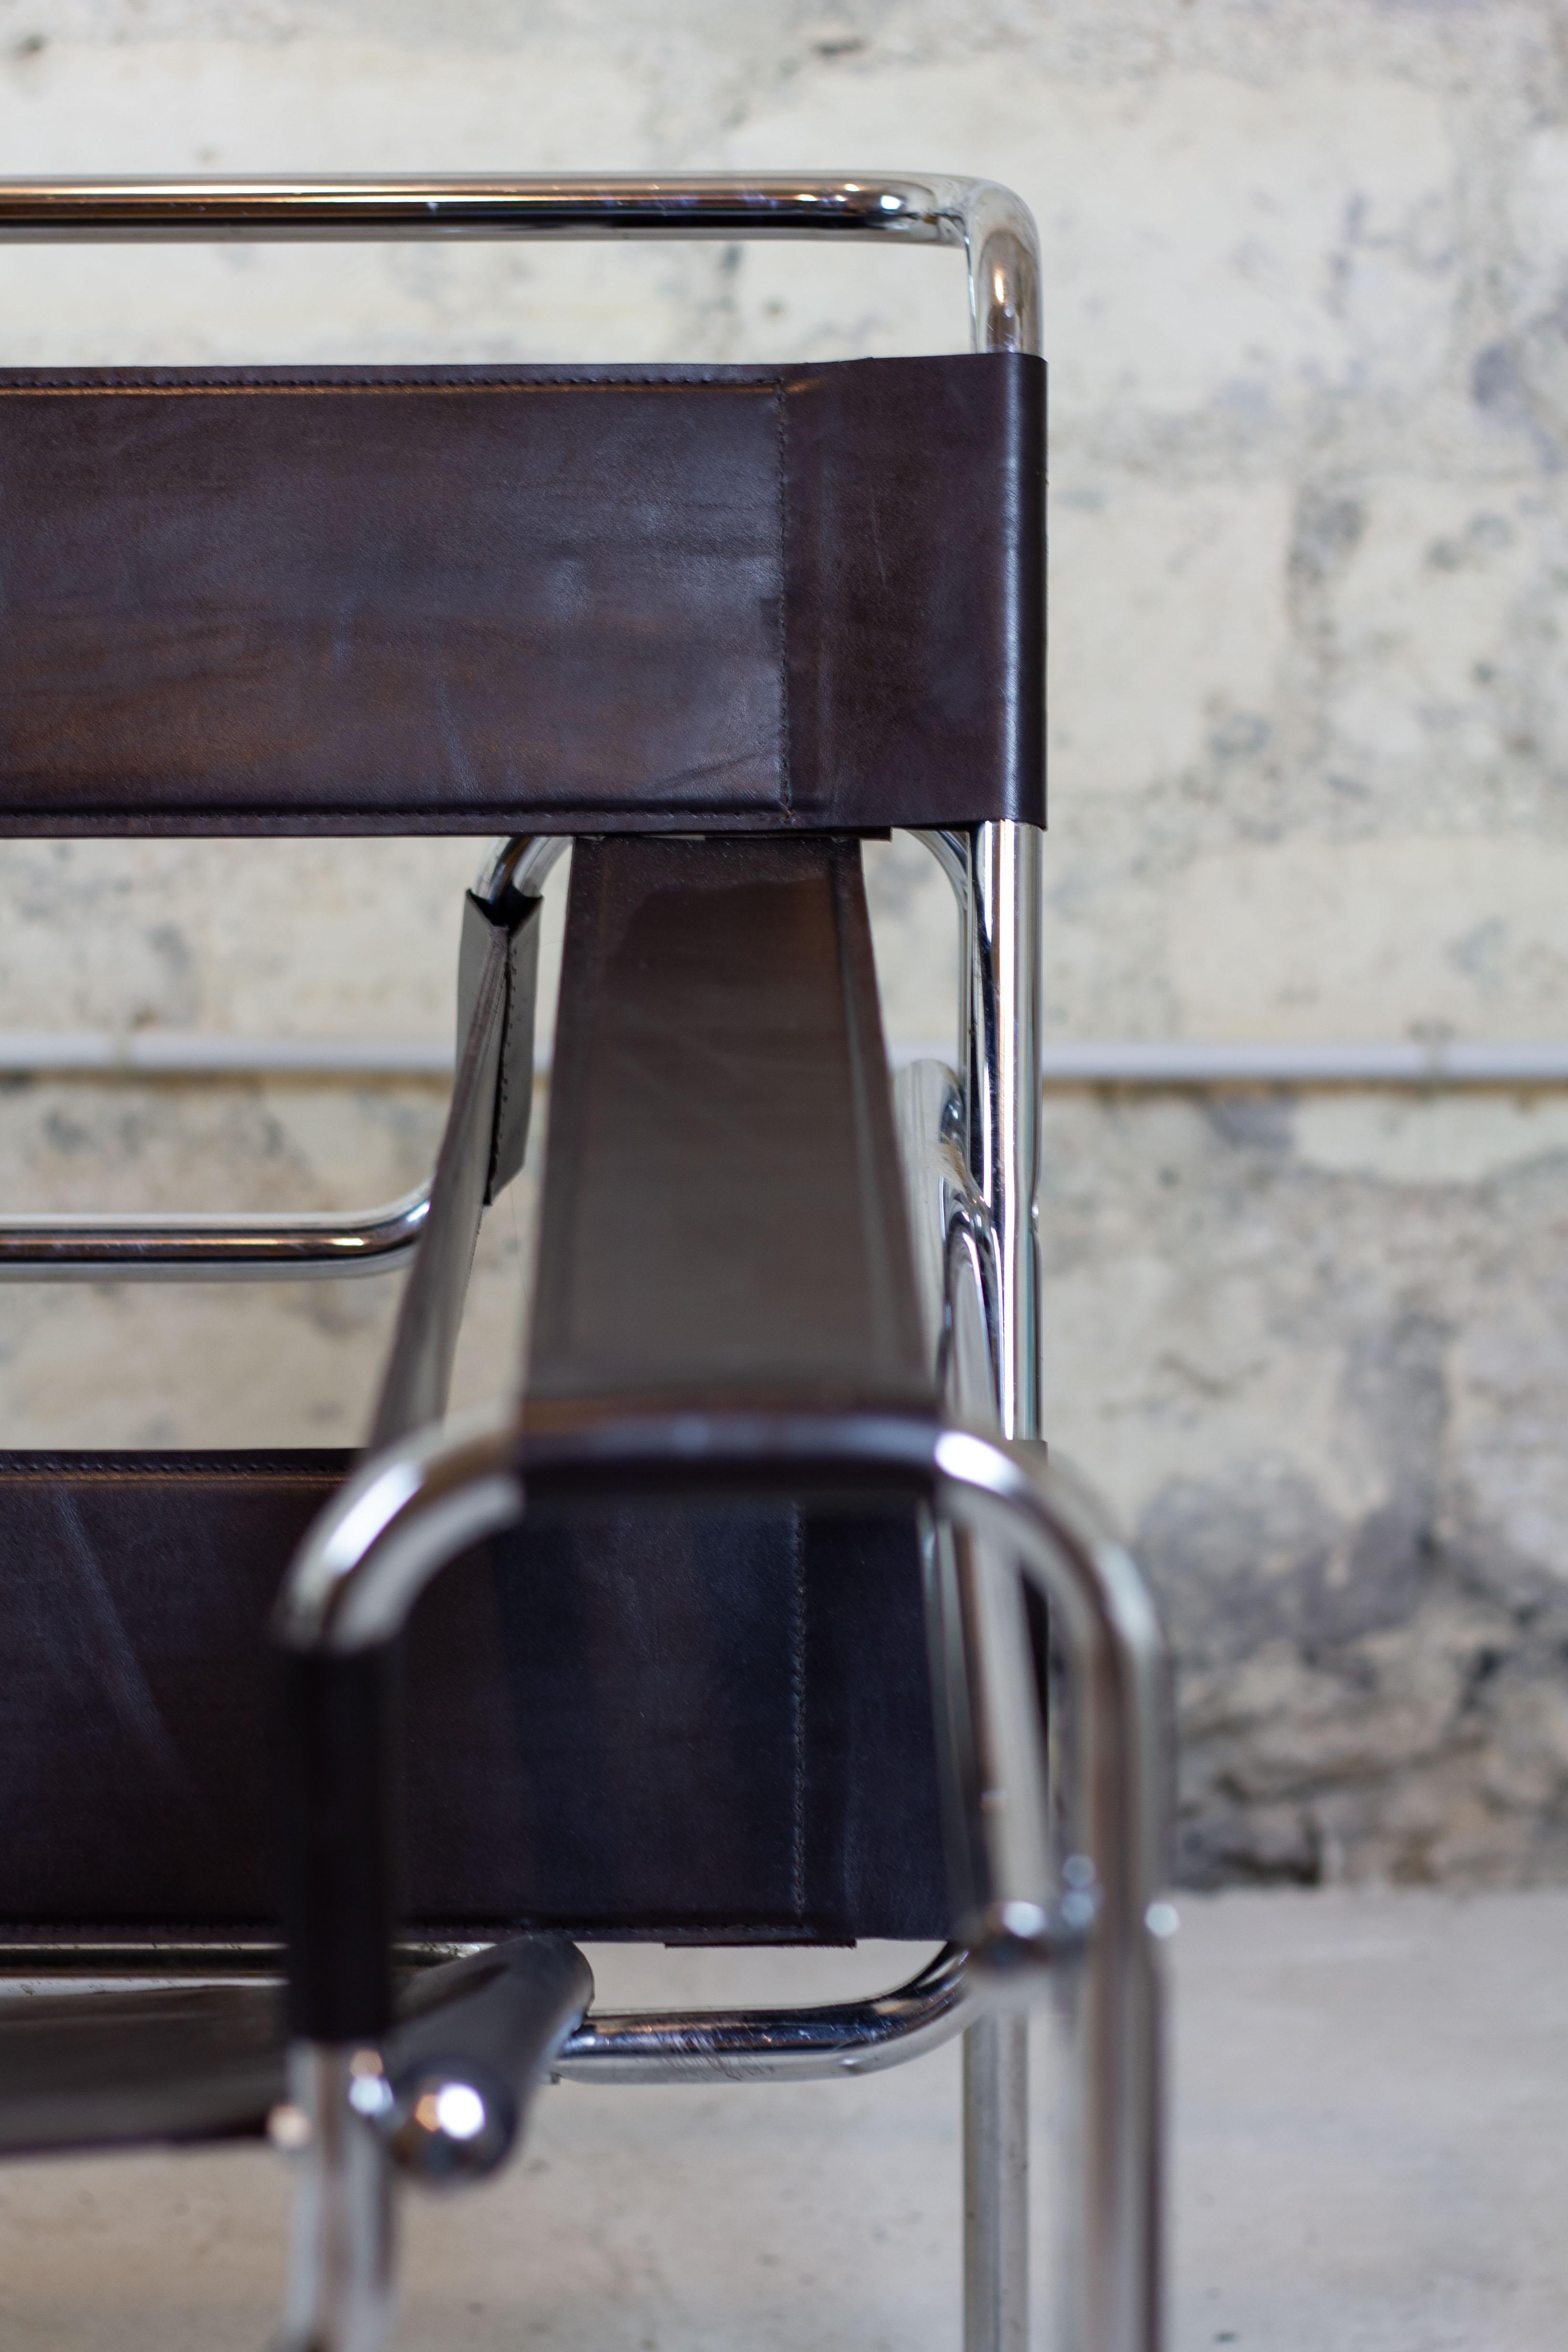 Créé en 1925, véritable icône du design du 20ème siècle, le fauteuil Wassily de Marcel Breuer a été conçu pour l'appartement de Kandinsky au Bauhaus de Dessau,  ensemble architectural moderne situé à Design/One, en Allemagne, et destiné